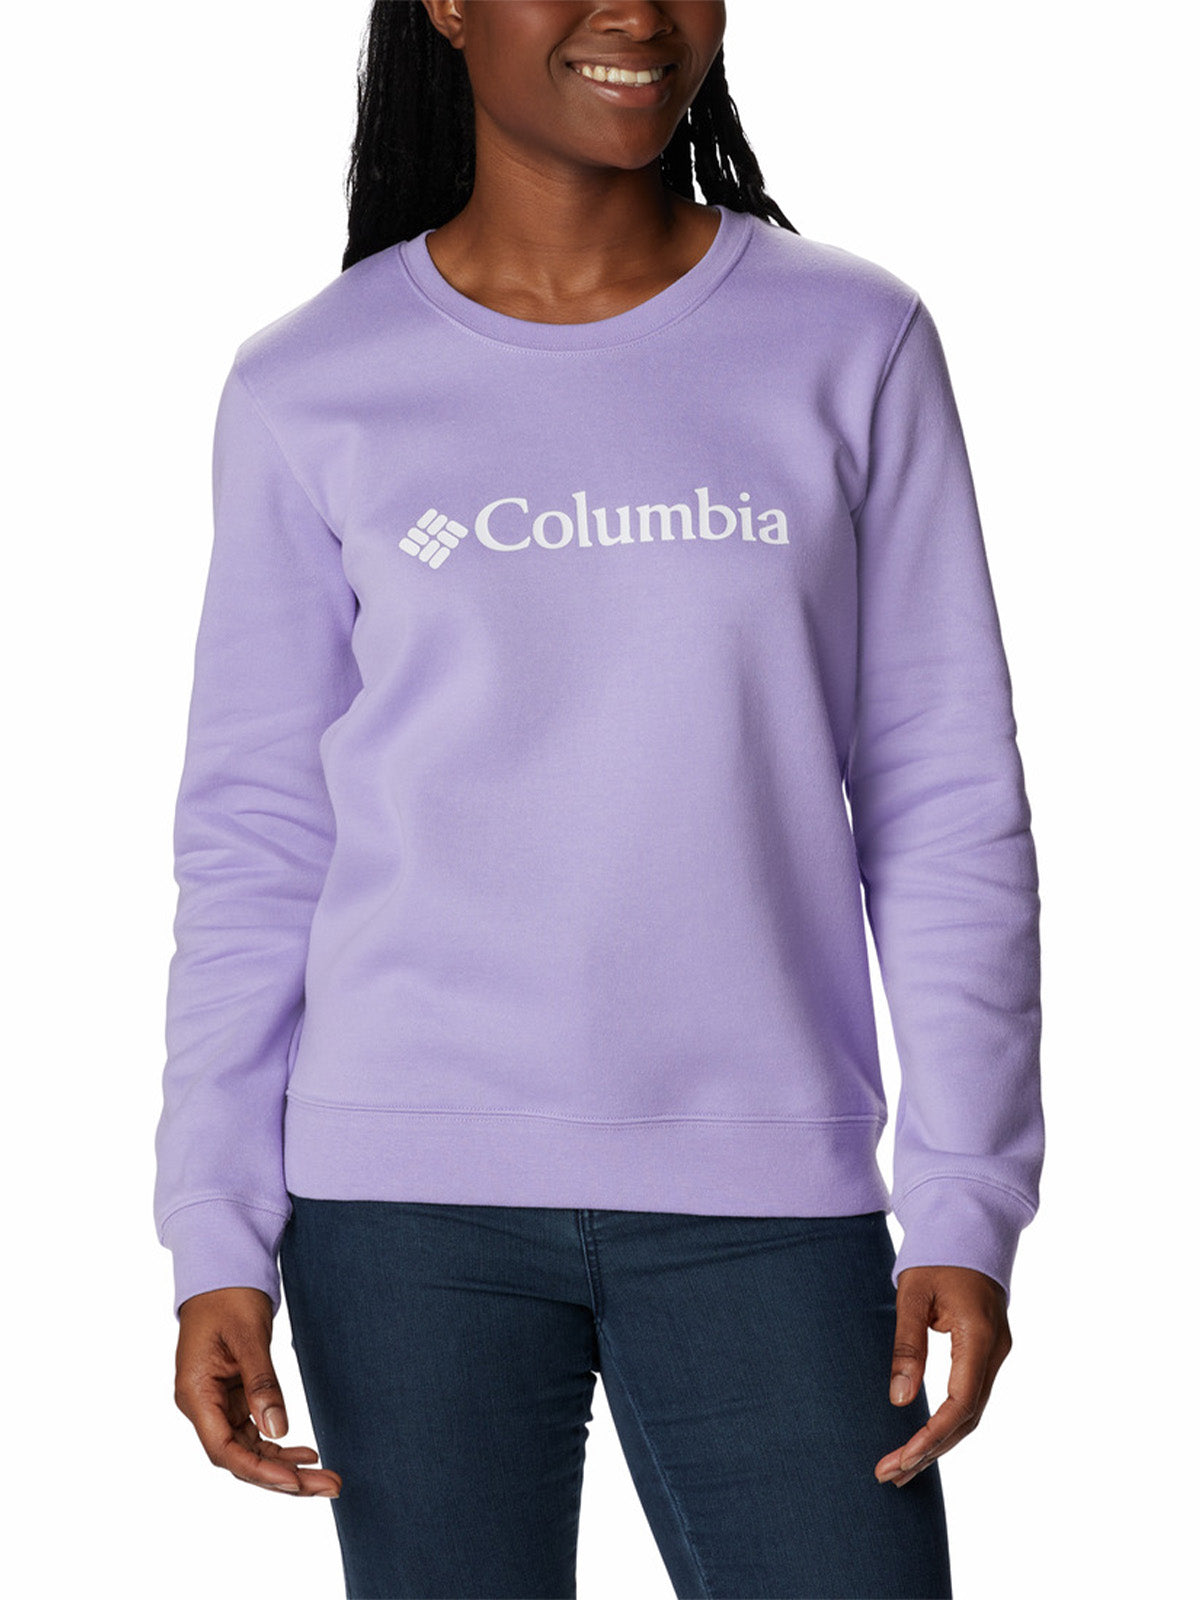 Women's Columbia Trek Graphic Crew Sweatshirt